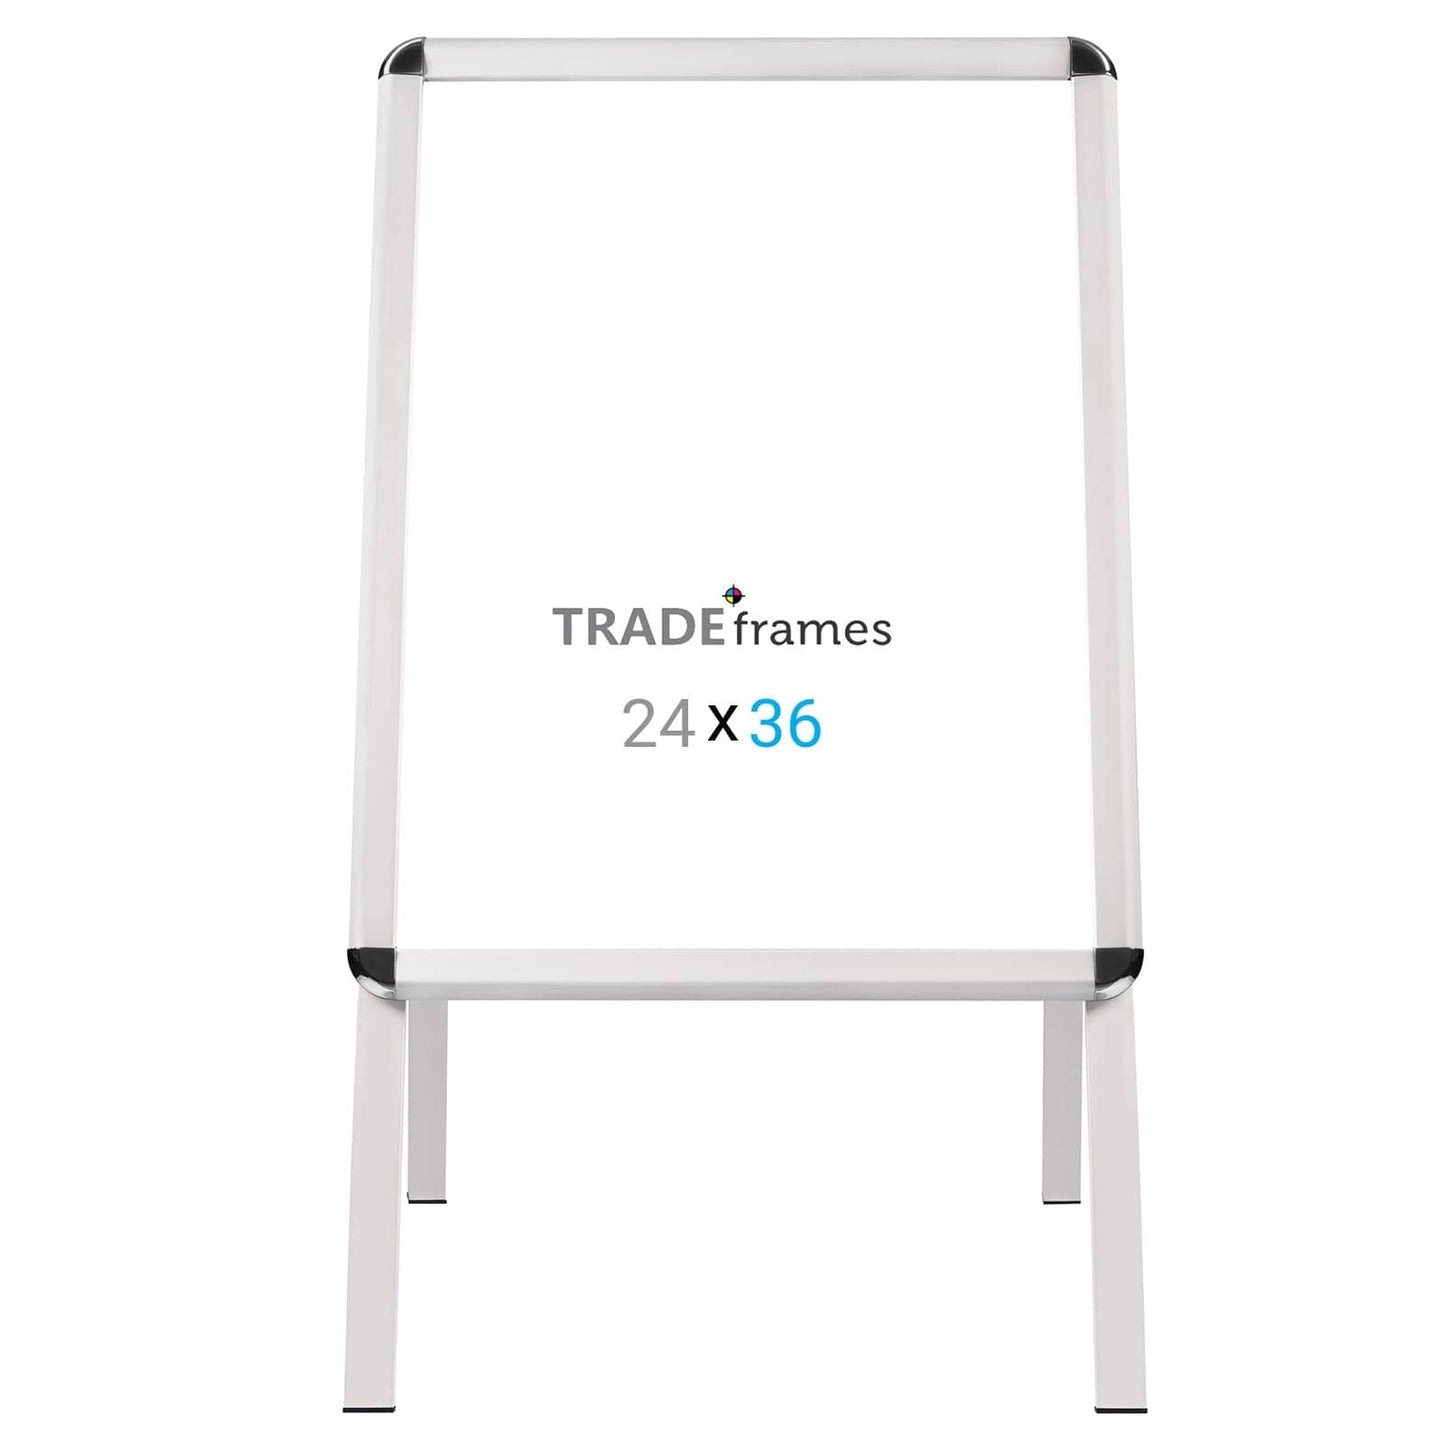 24x36 Silver TRADEframe Sidewalk Sign - 1.25" Profile - Snap Frames Direct